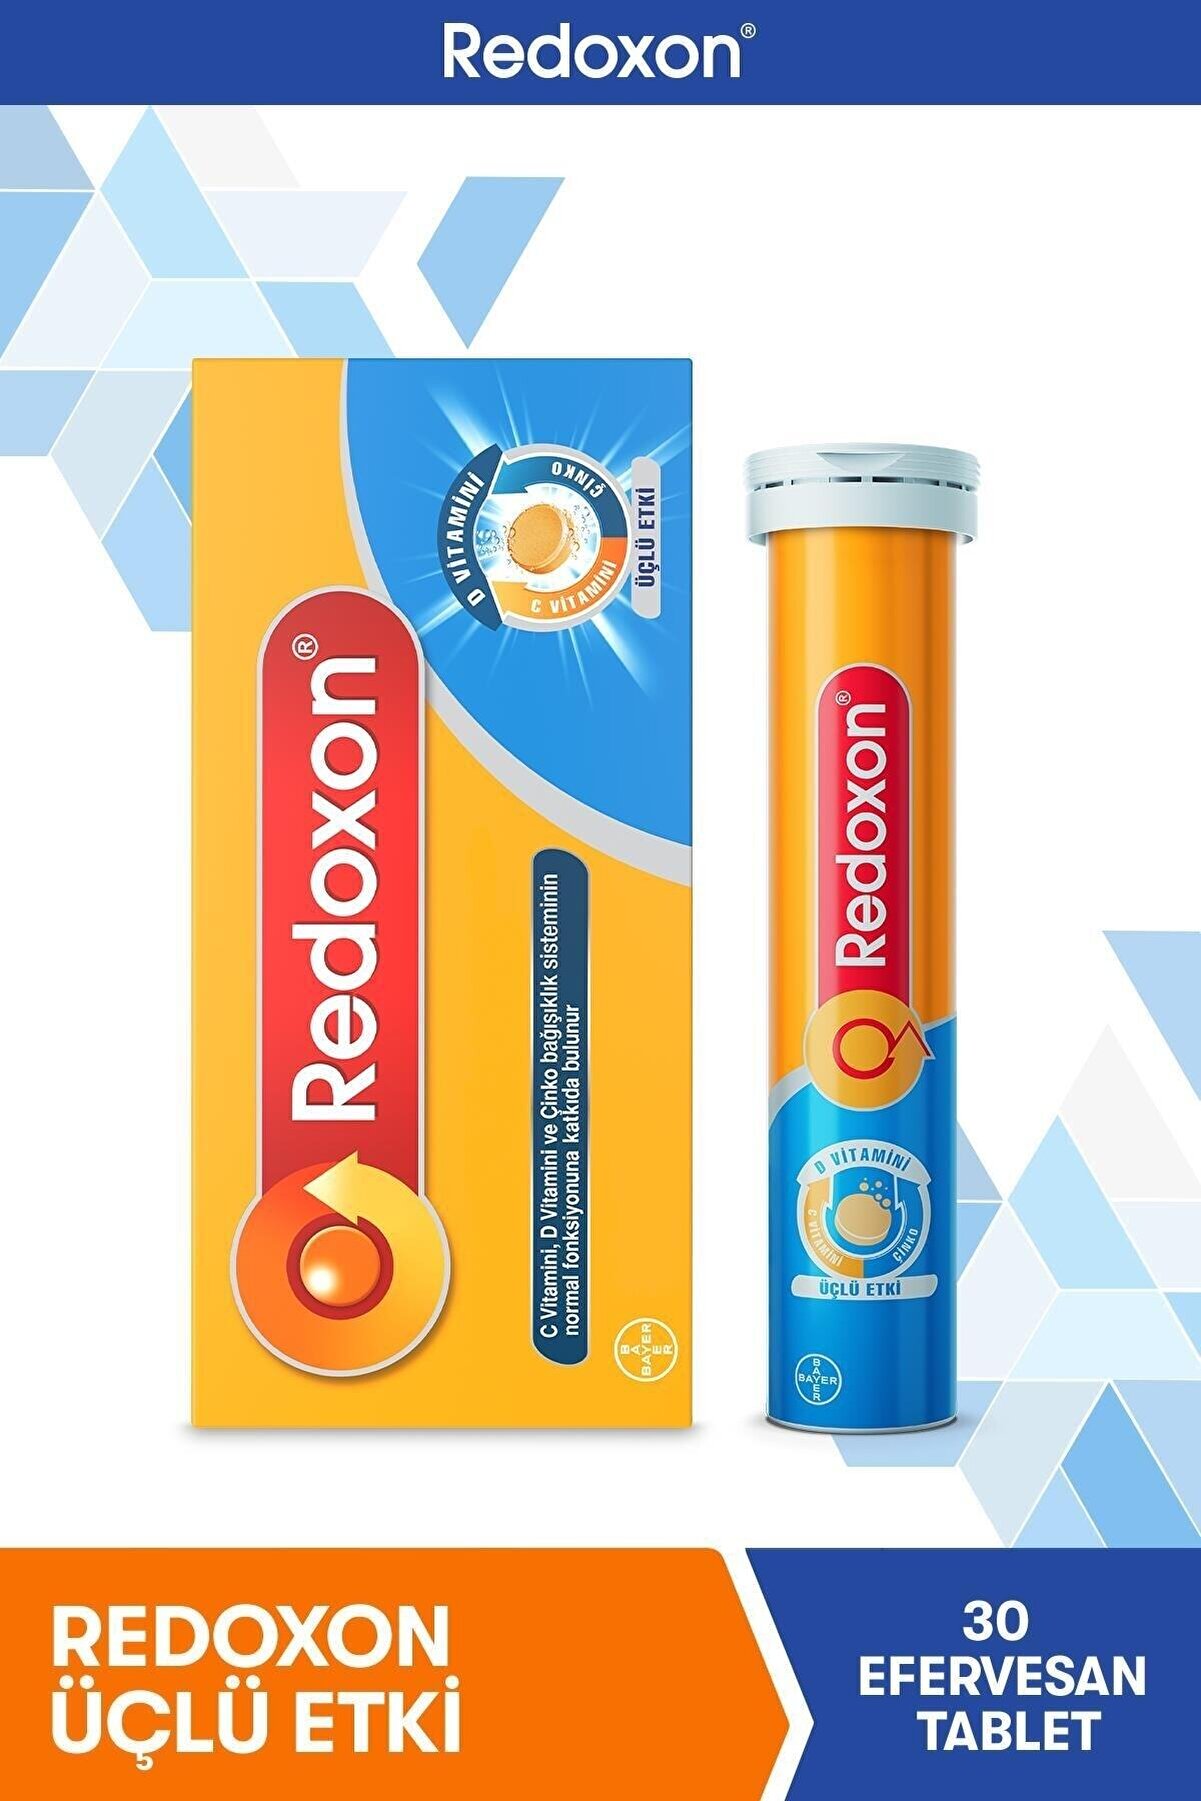 Redoxon Üçlü Etki 30 Efervesan Tablet I 1000 Mg C Vitamini, D Vitamini Ve Çinko Içeren Takviye Edici